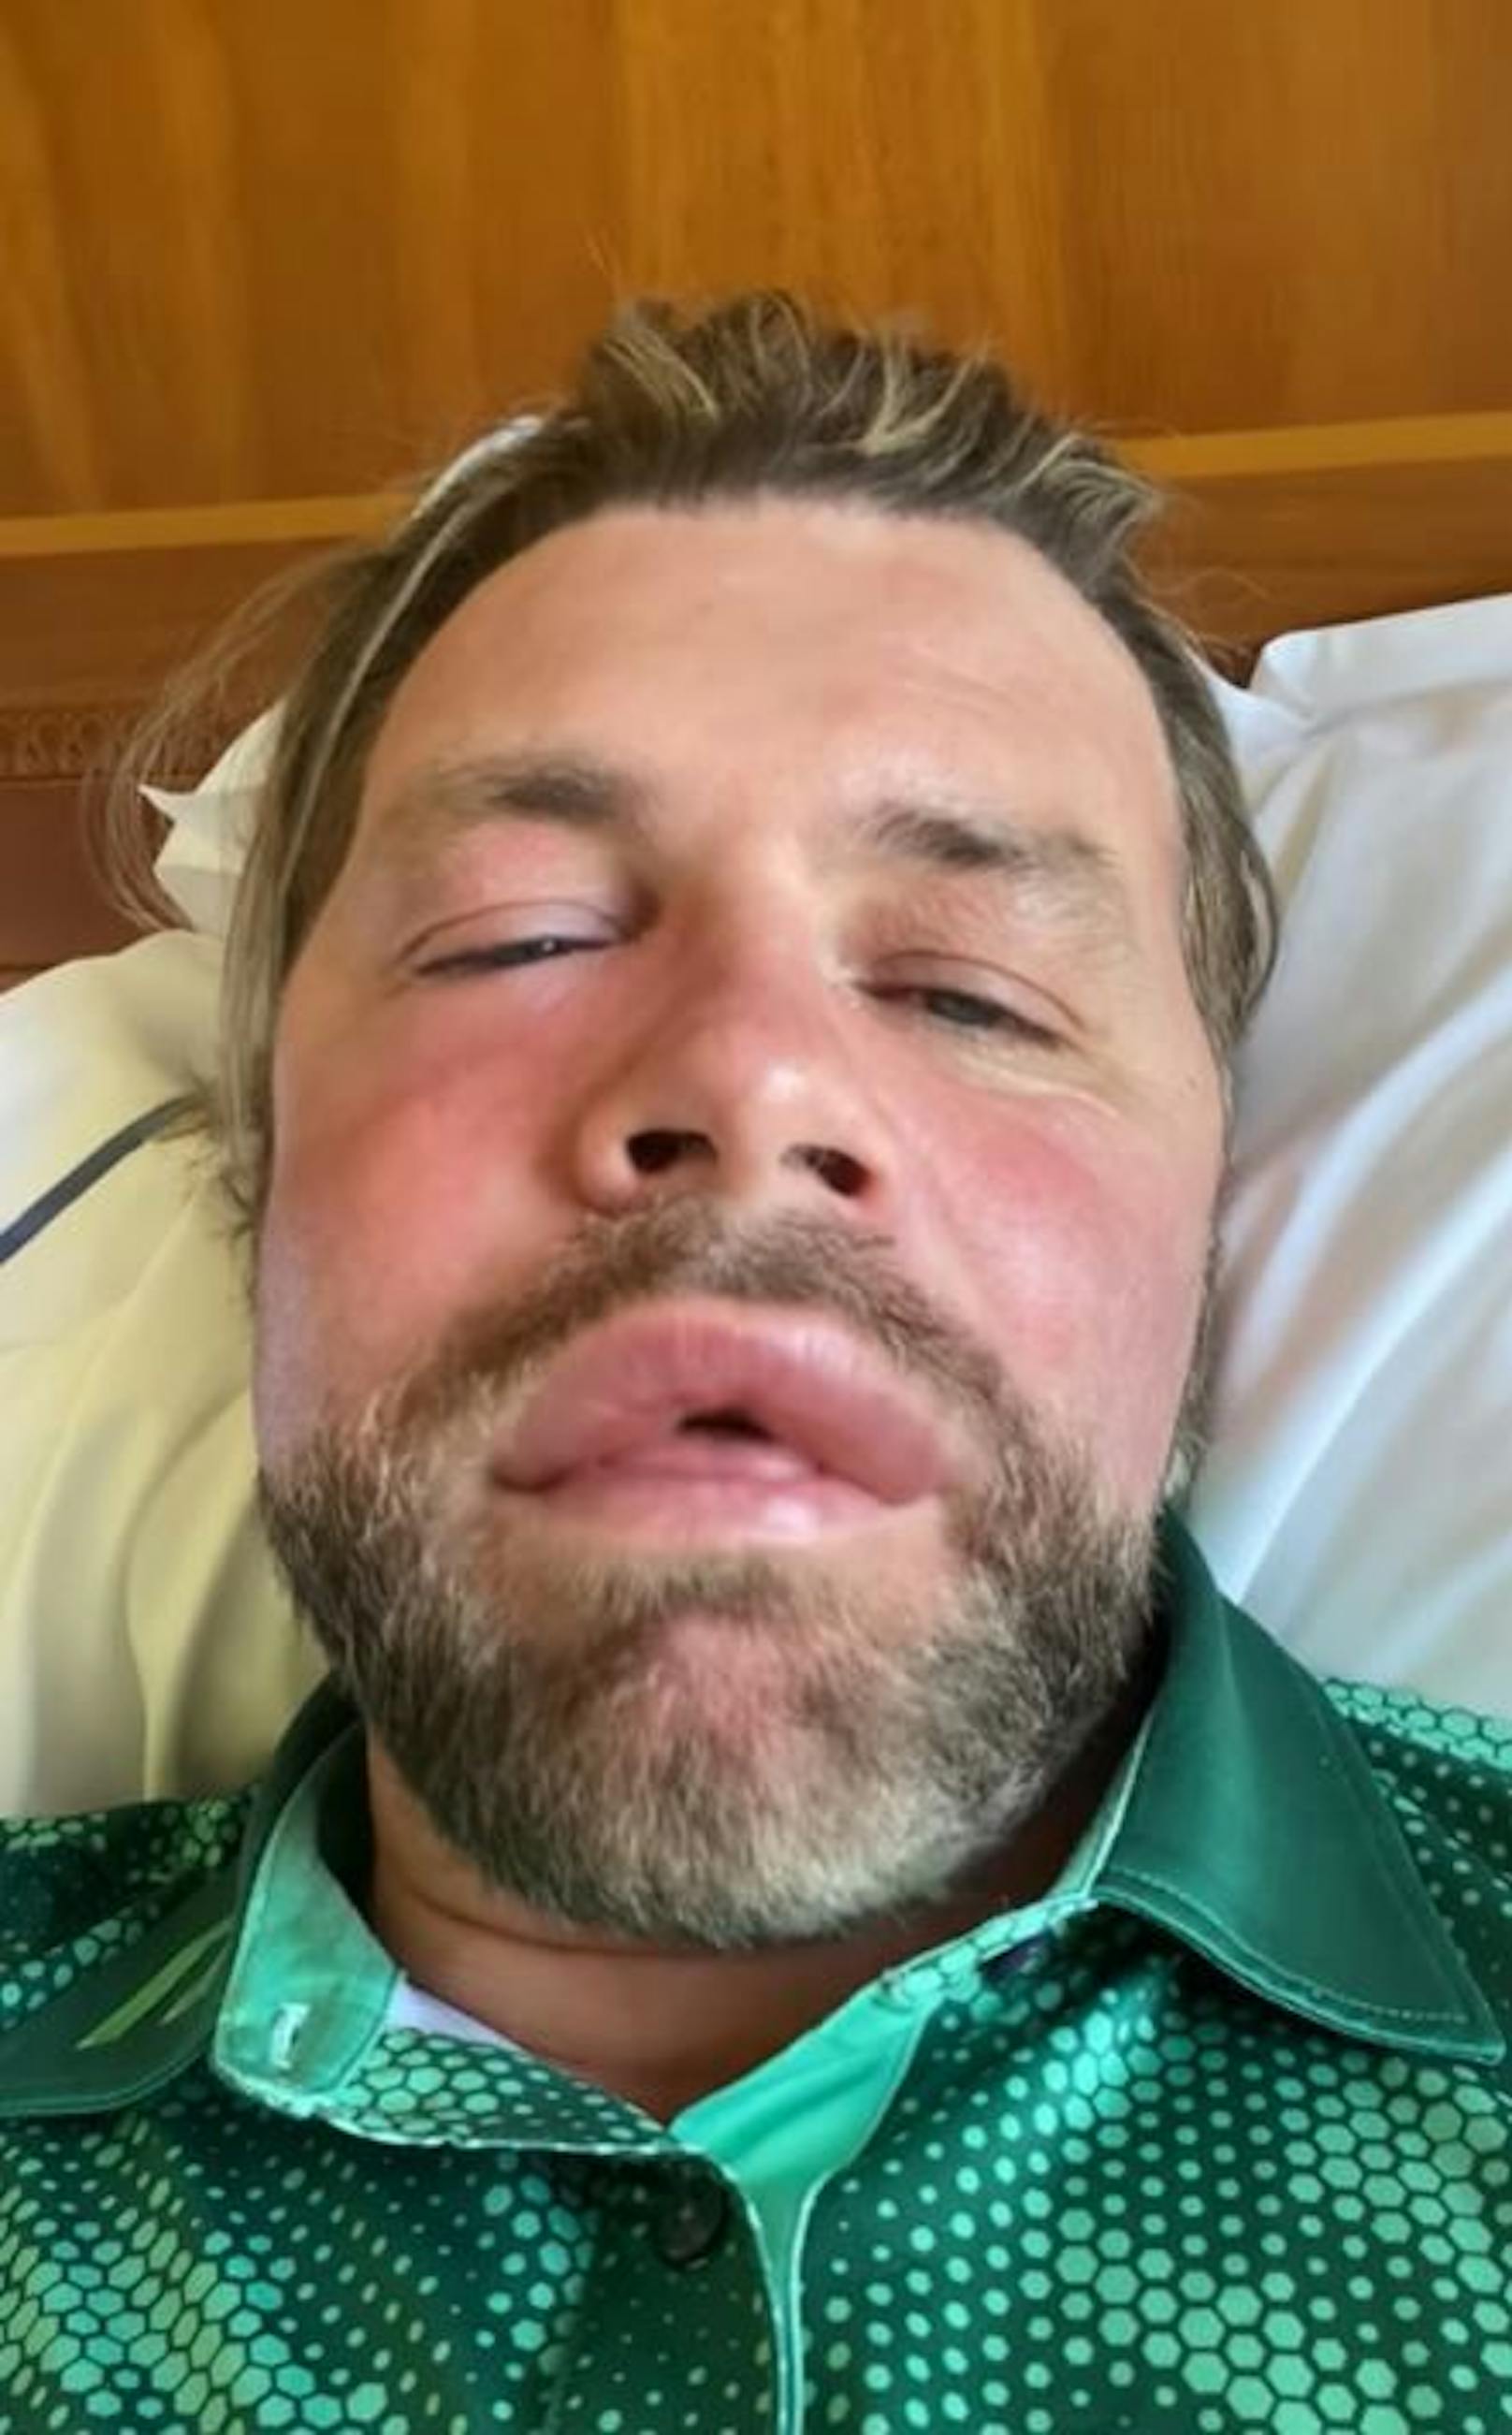 Popstar Brian McFadden wurde von einer Biene gestochen und erlitt dabei eine allergische Reaktion.